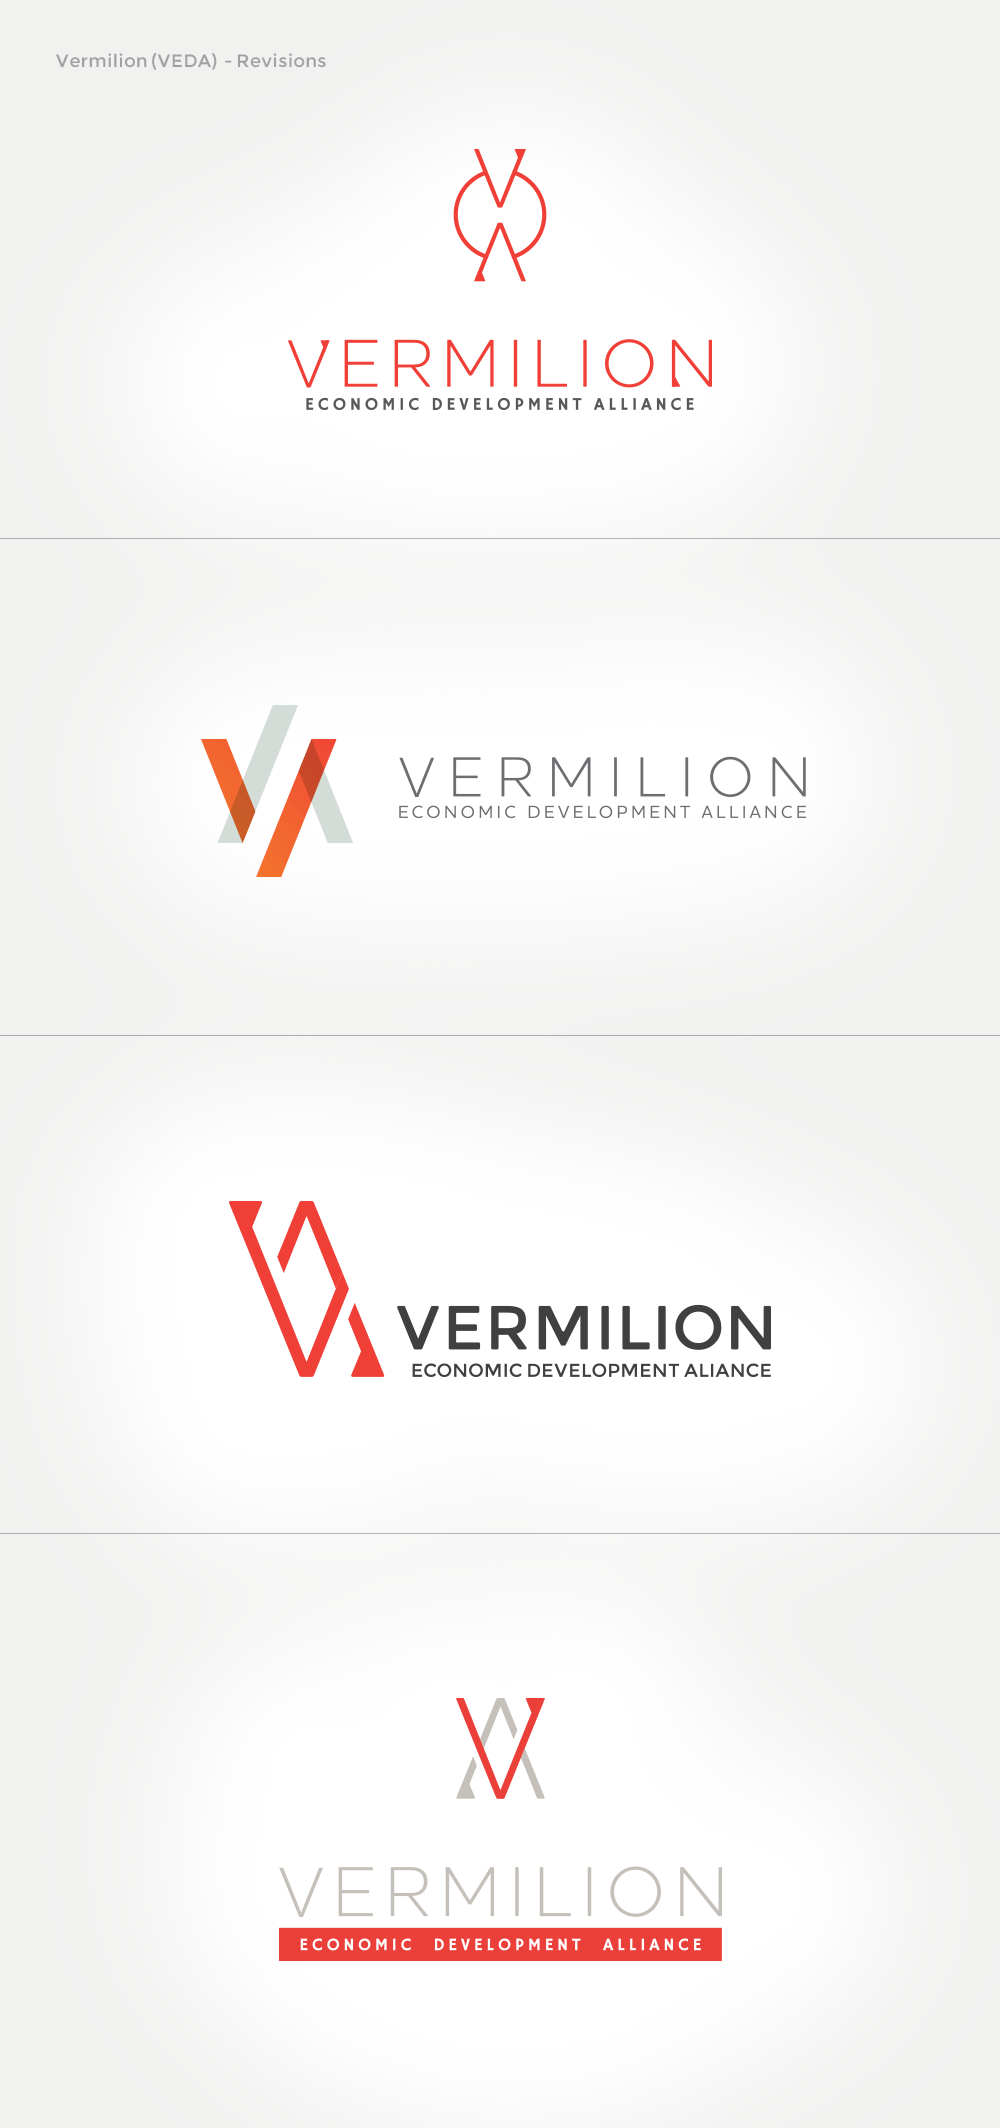 Vermilion Logo - Vermilion Economic Development Alliance: Logo development meets ...